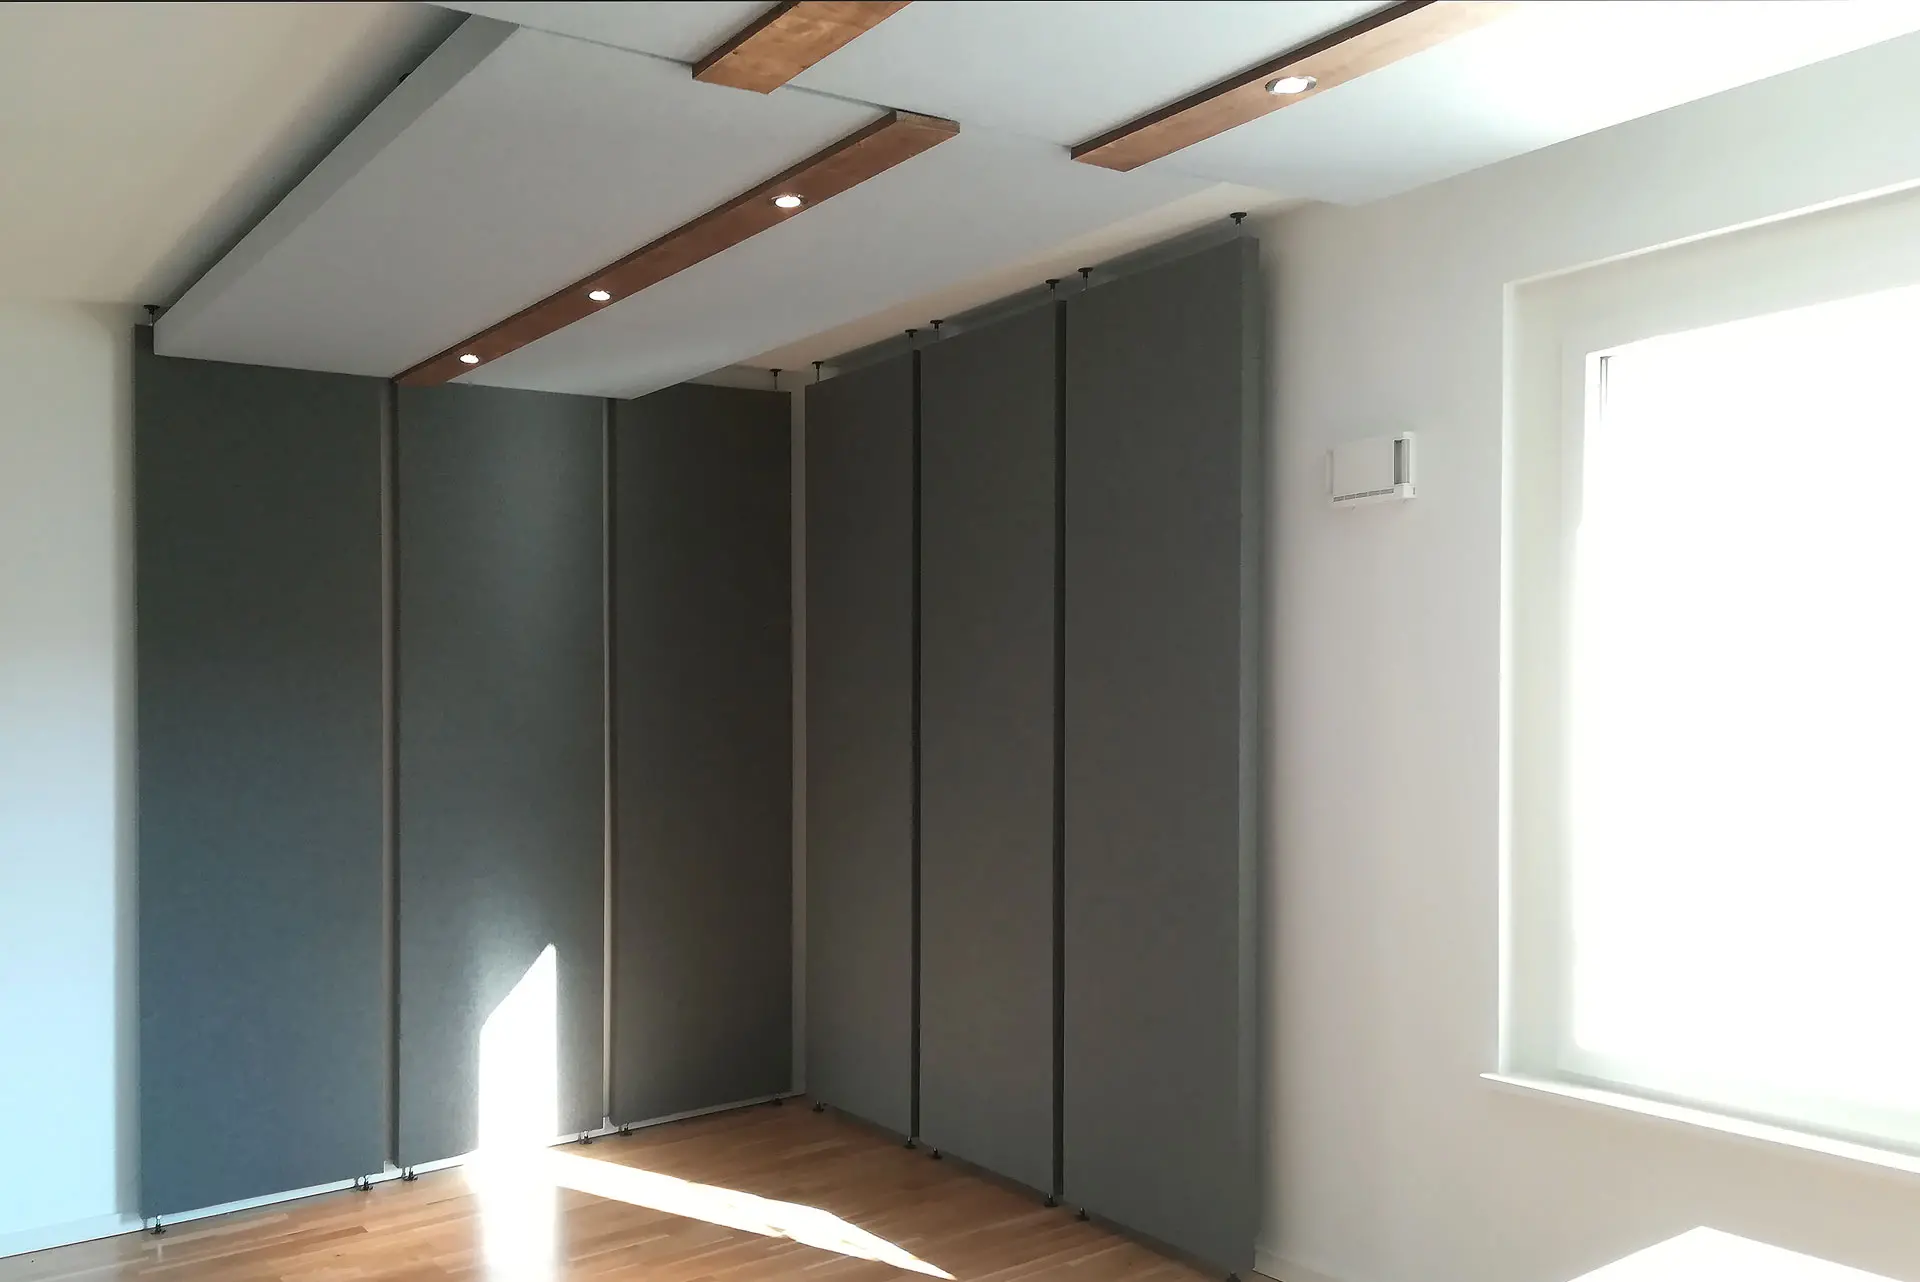 комплект мобильных акустических панелей в эфирной студии, Berlin